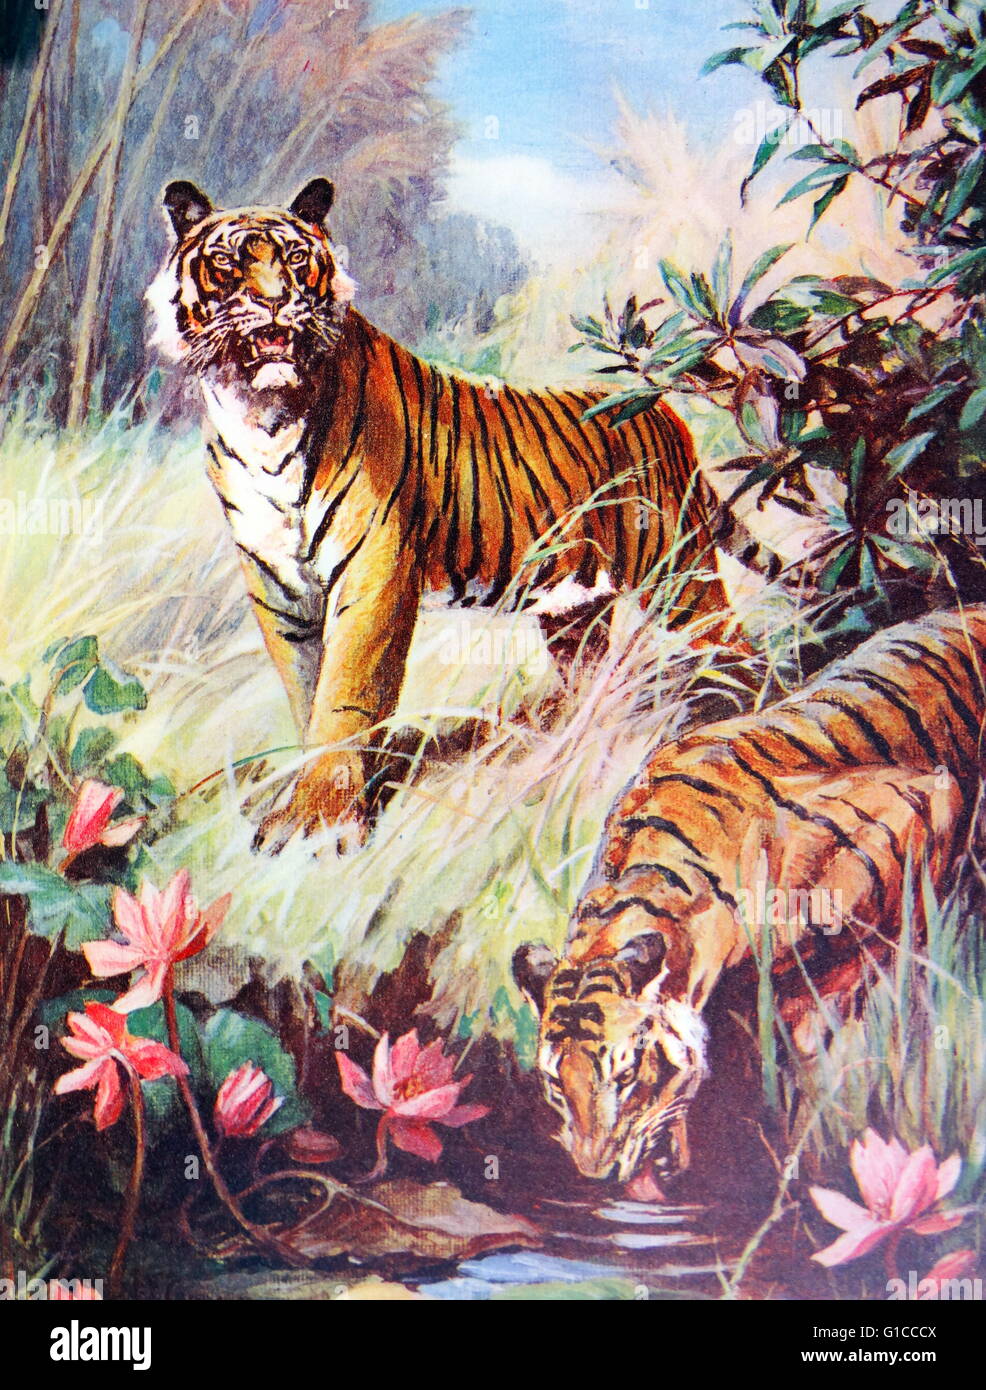 Children's book illustration de deux tigres du Bengale à un point d'eau en Inde vers 1930 Banque D'Images